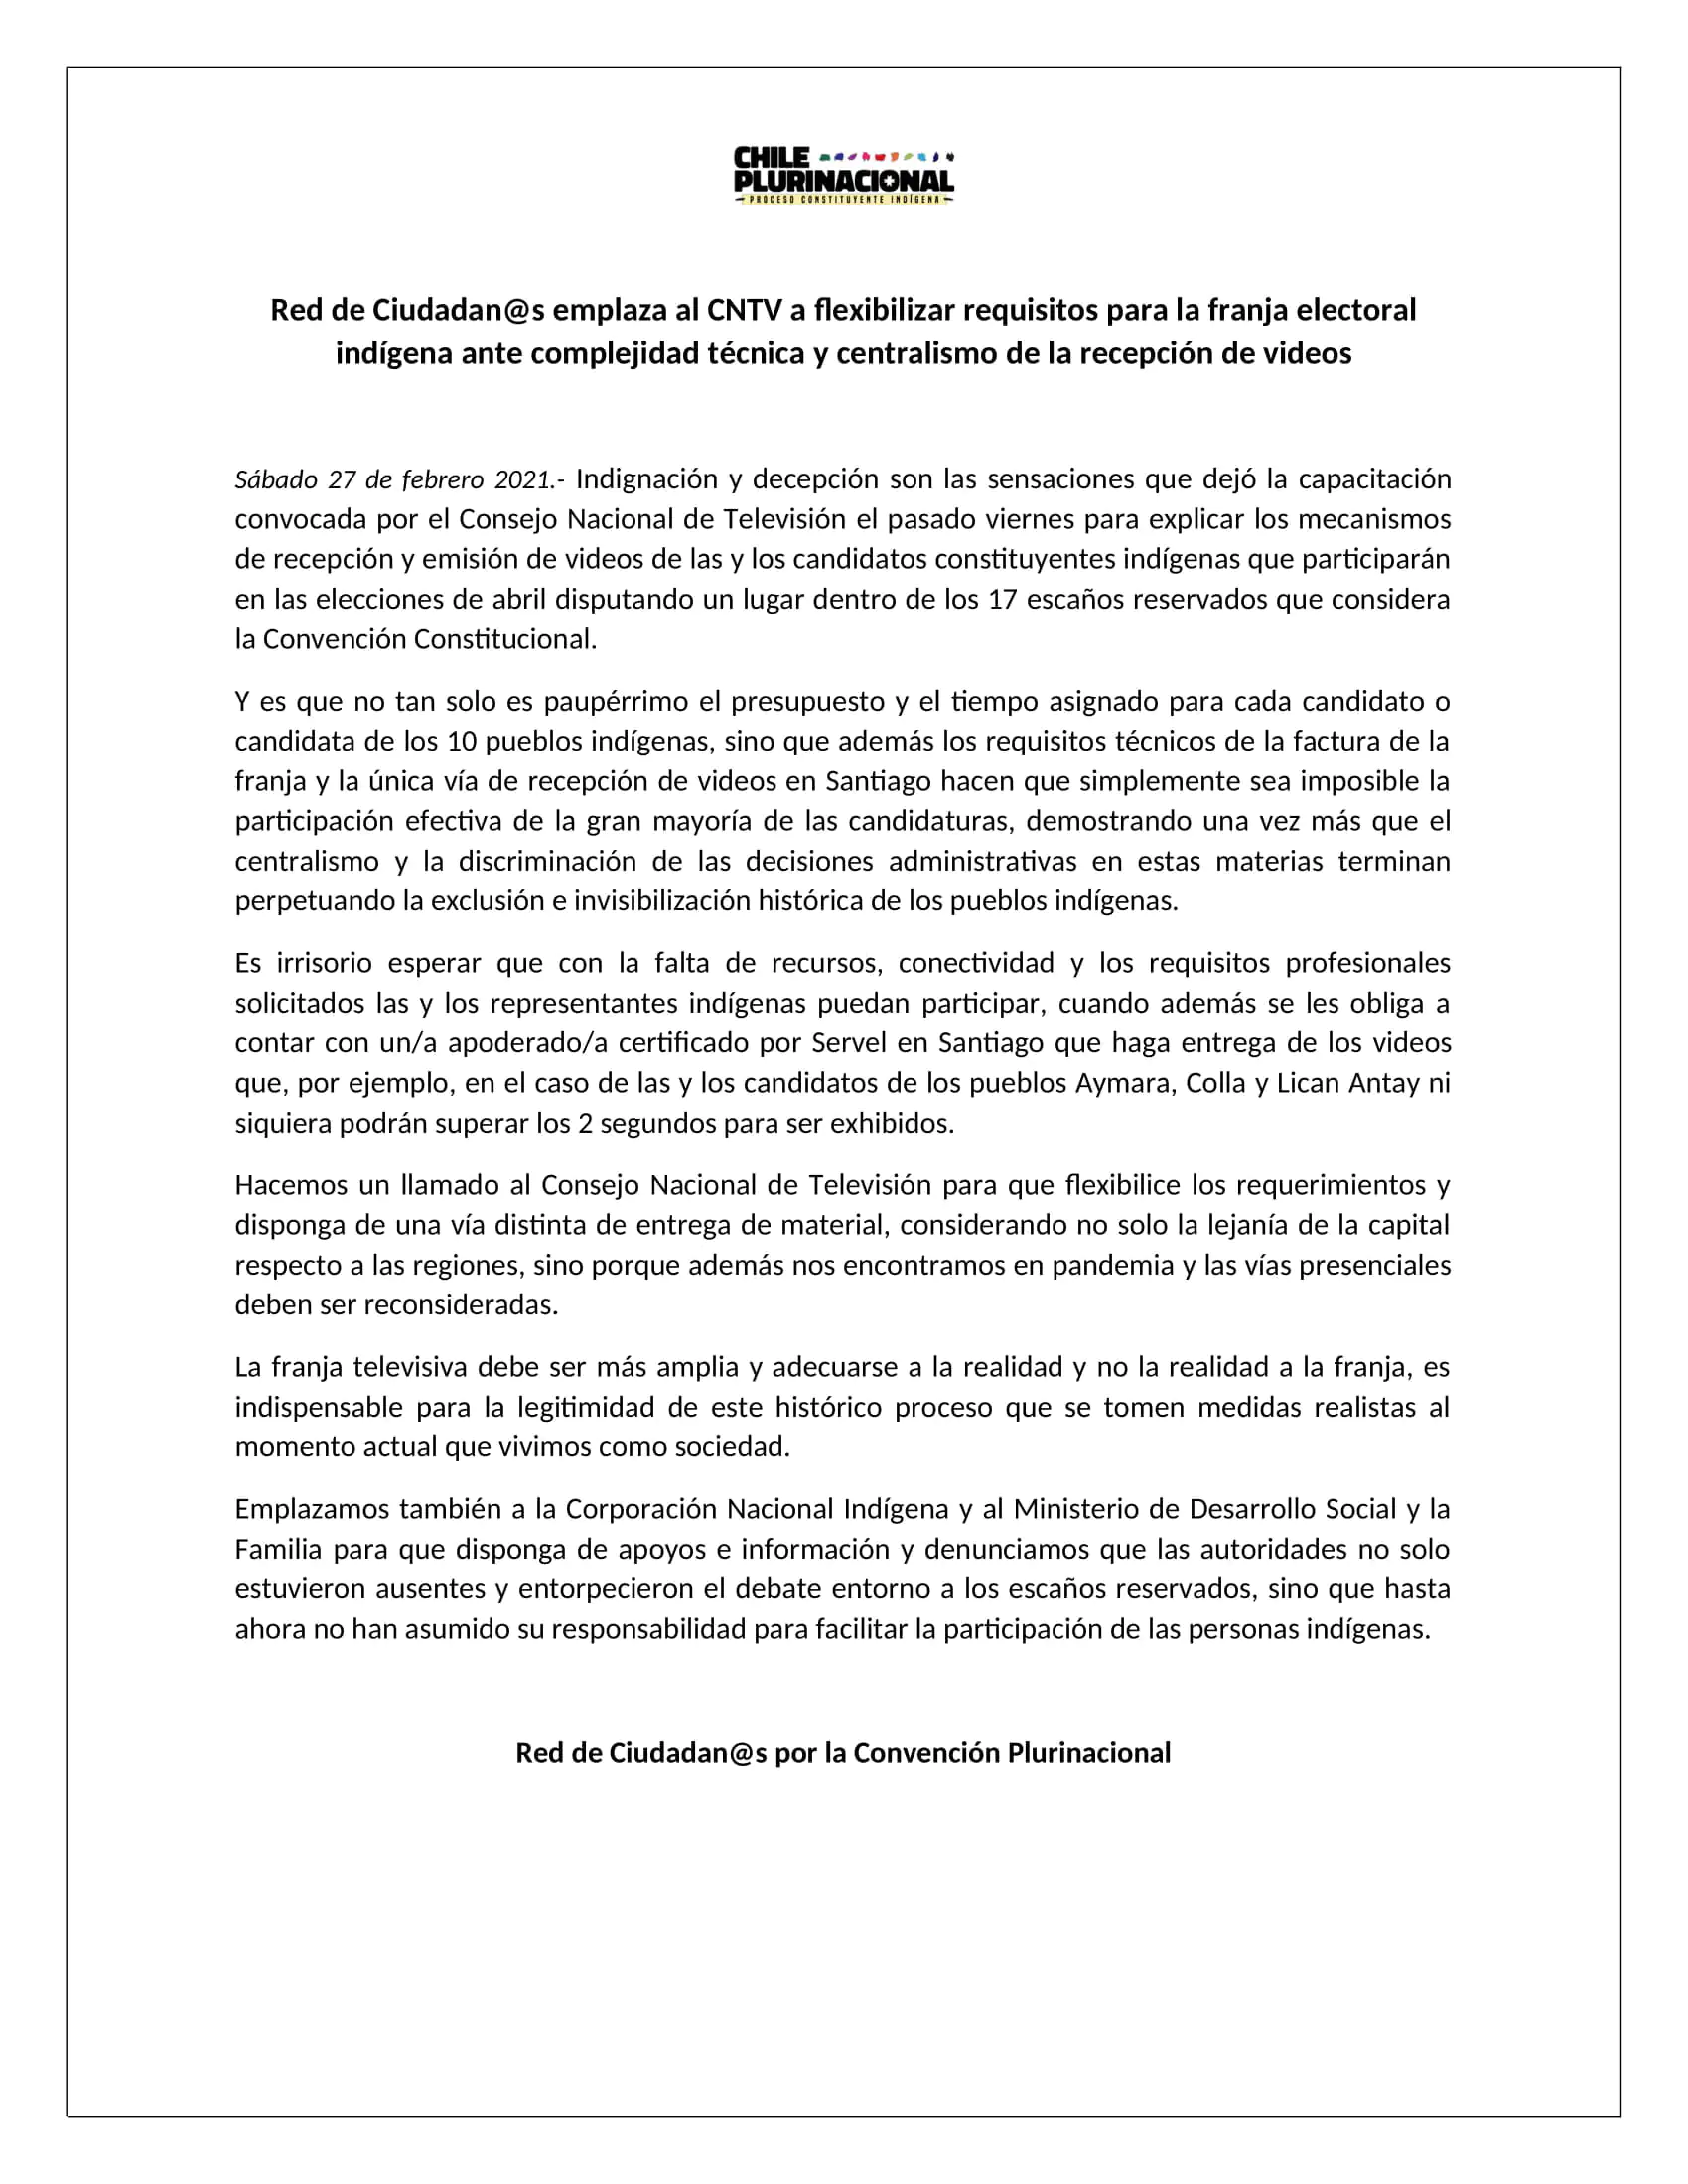 Declaración Red de Ciudadanos por la Convención Plurinacional ante requisitos de Franja Electoral